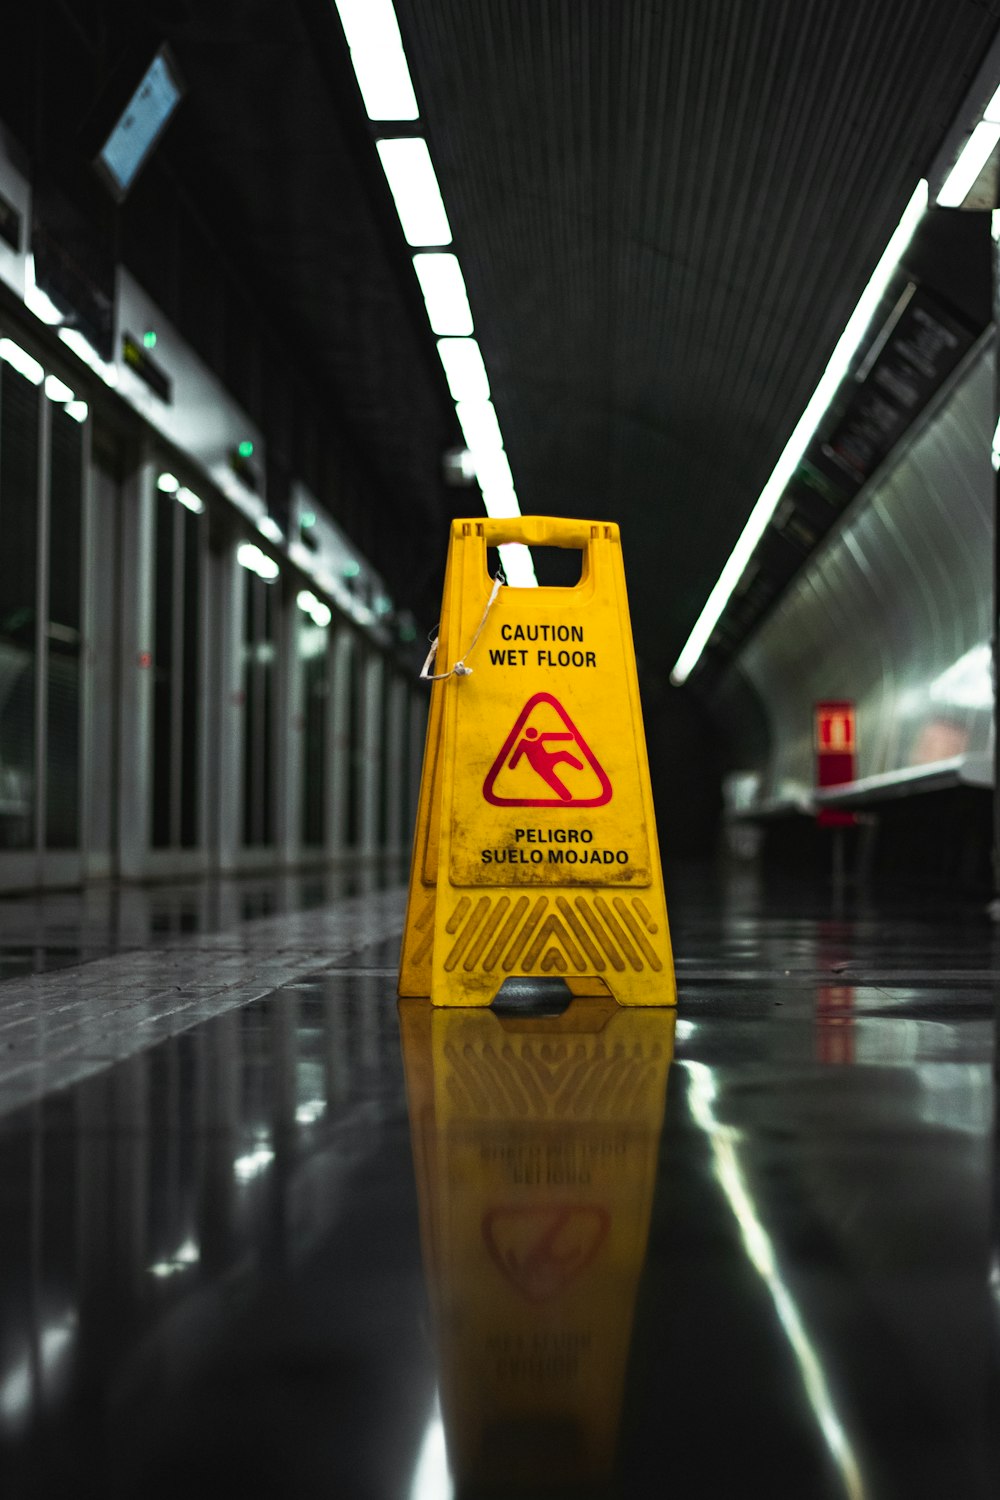 wet floor signage on floor